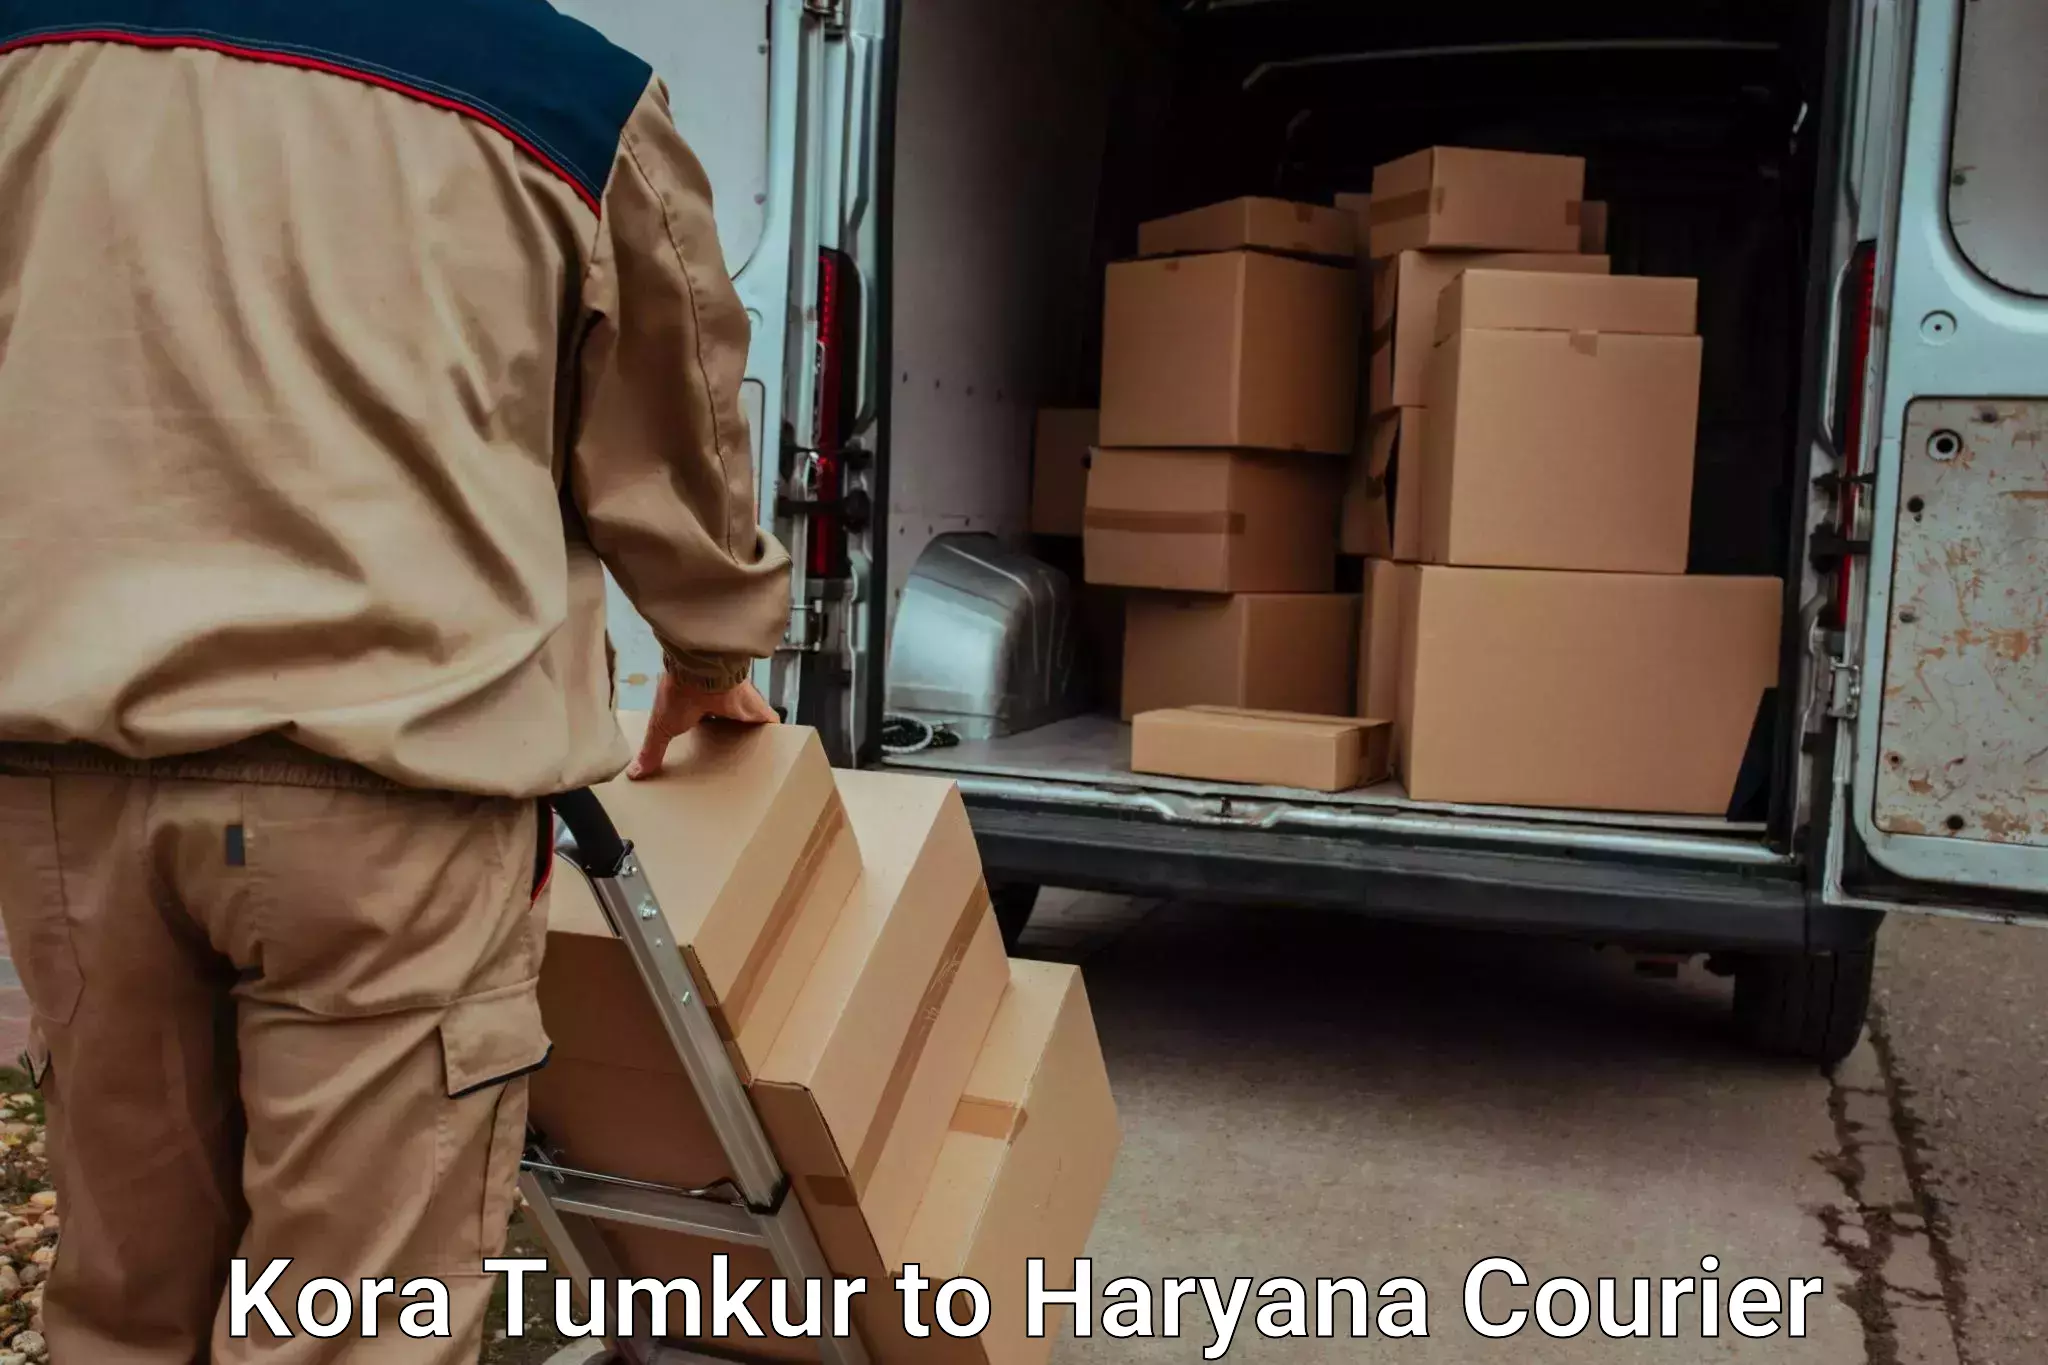 Overnight luggage courier Kora Tumkur to Haryana